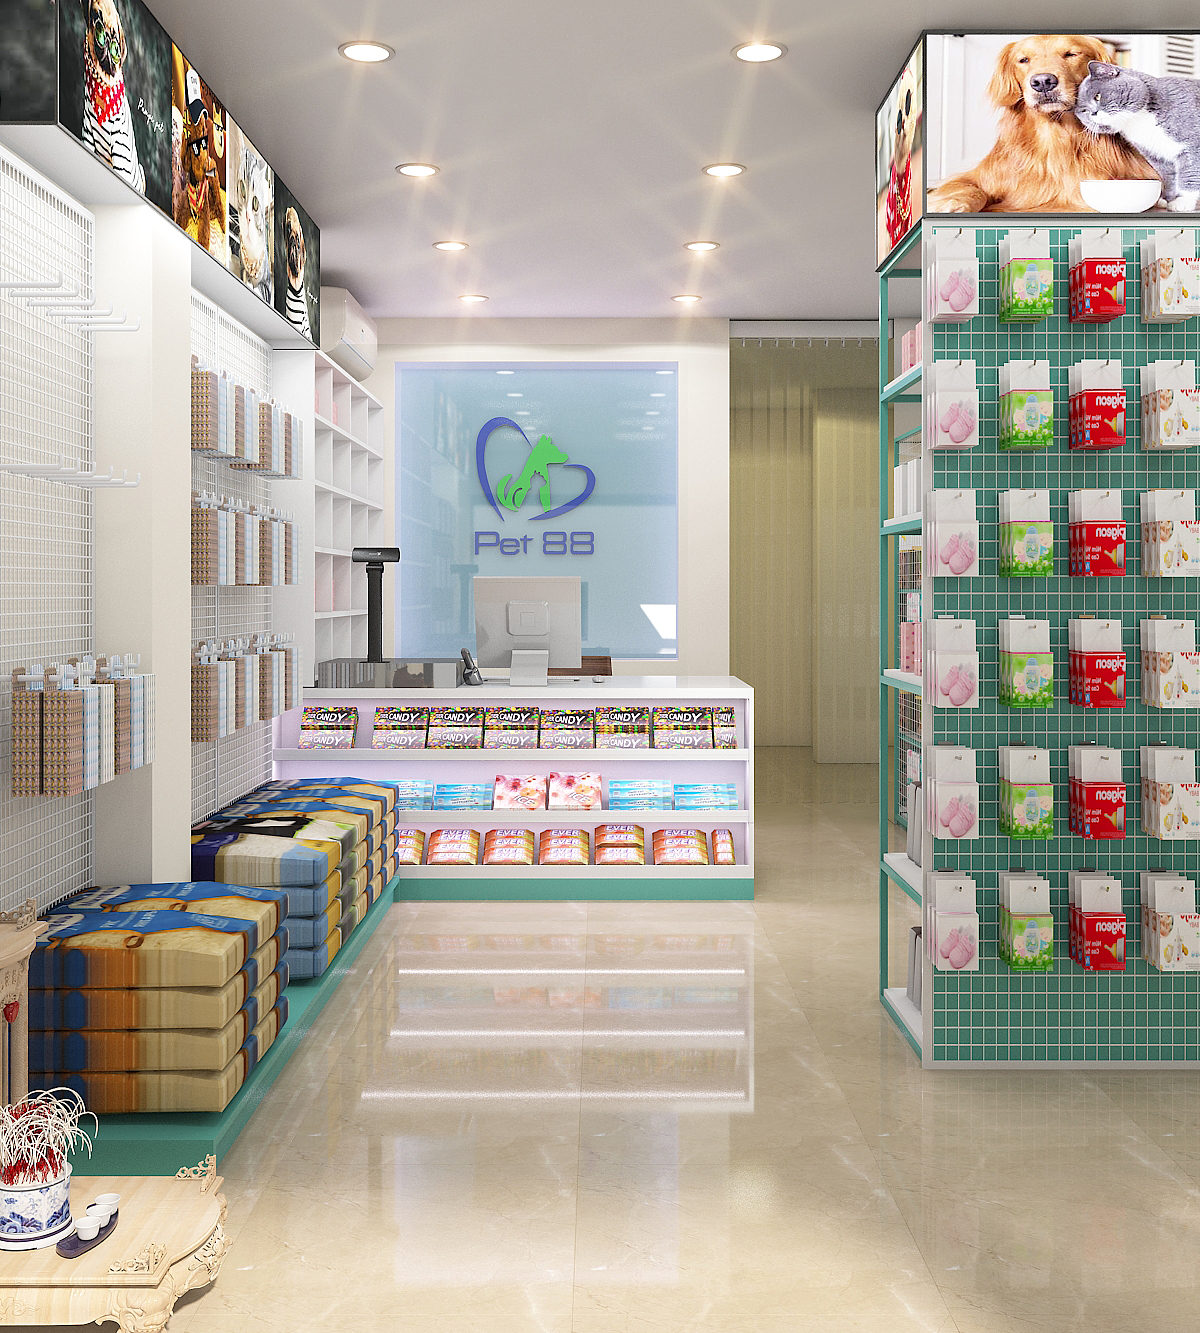 Thiết kế nội thất Shop tại Hà Nội shop Pet 1665526915 1